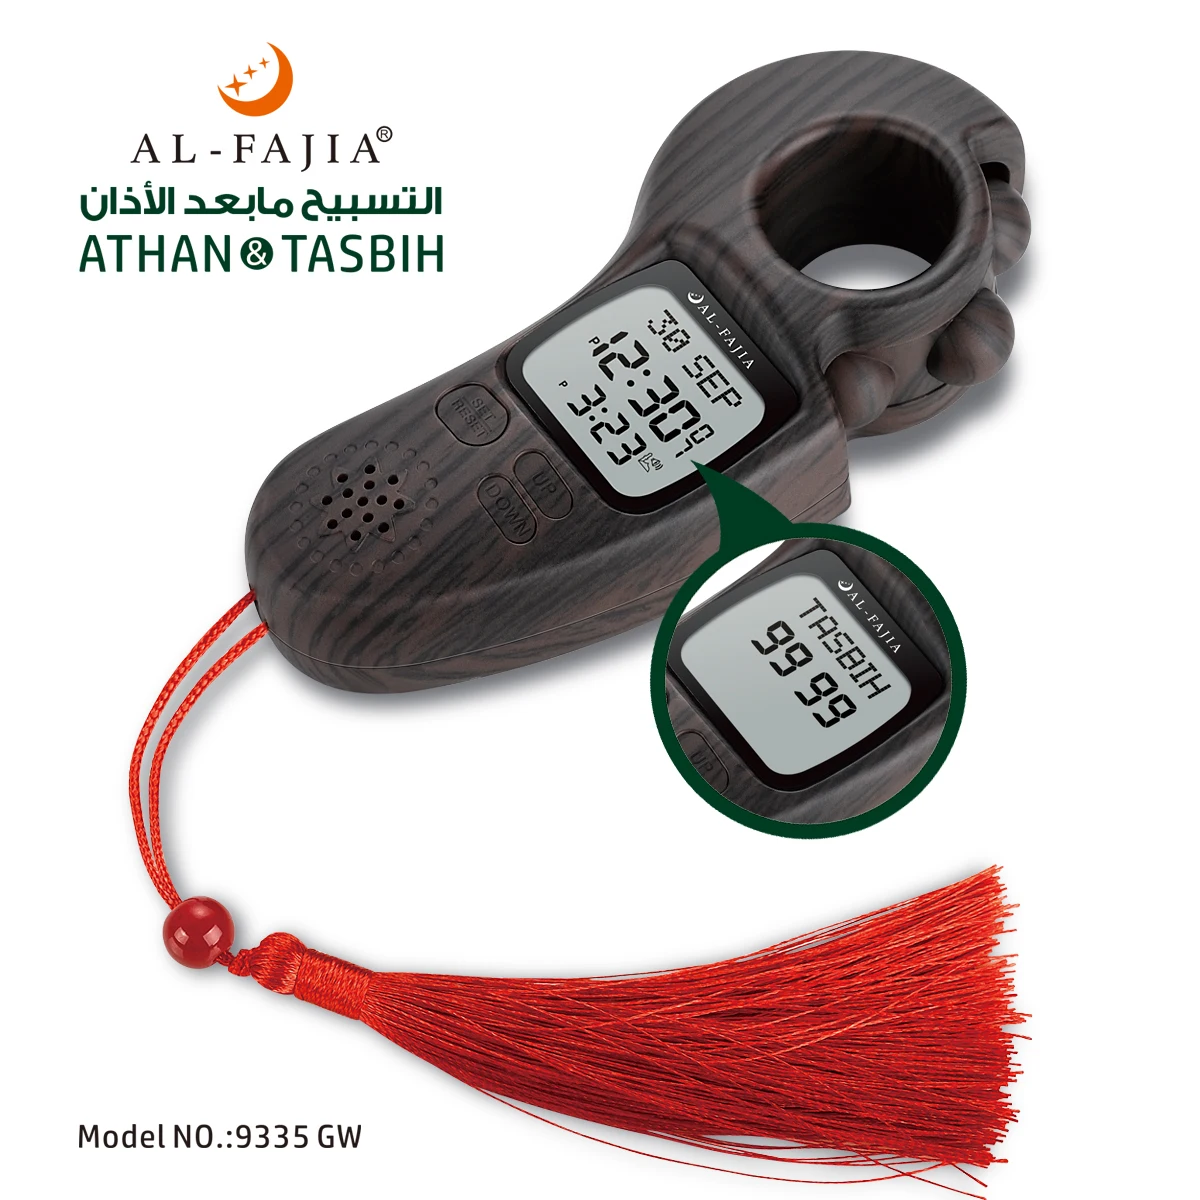 AL-FAJIA Digital Tasbih Contor de Timp de Rugăciune Islamică Athan Sunet Memento Tasbeeh Conta pentru Bărbați/Femei/Copii 3